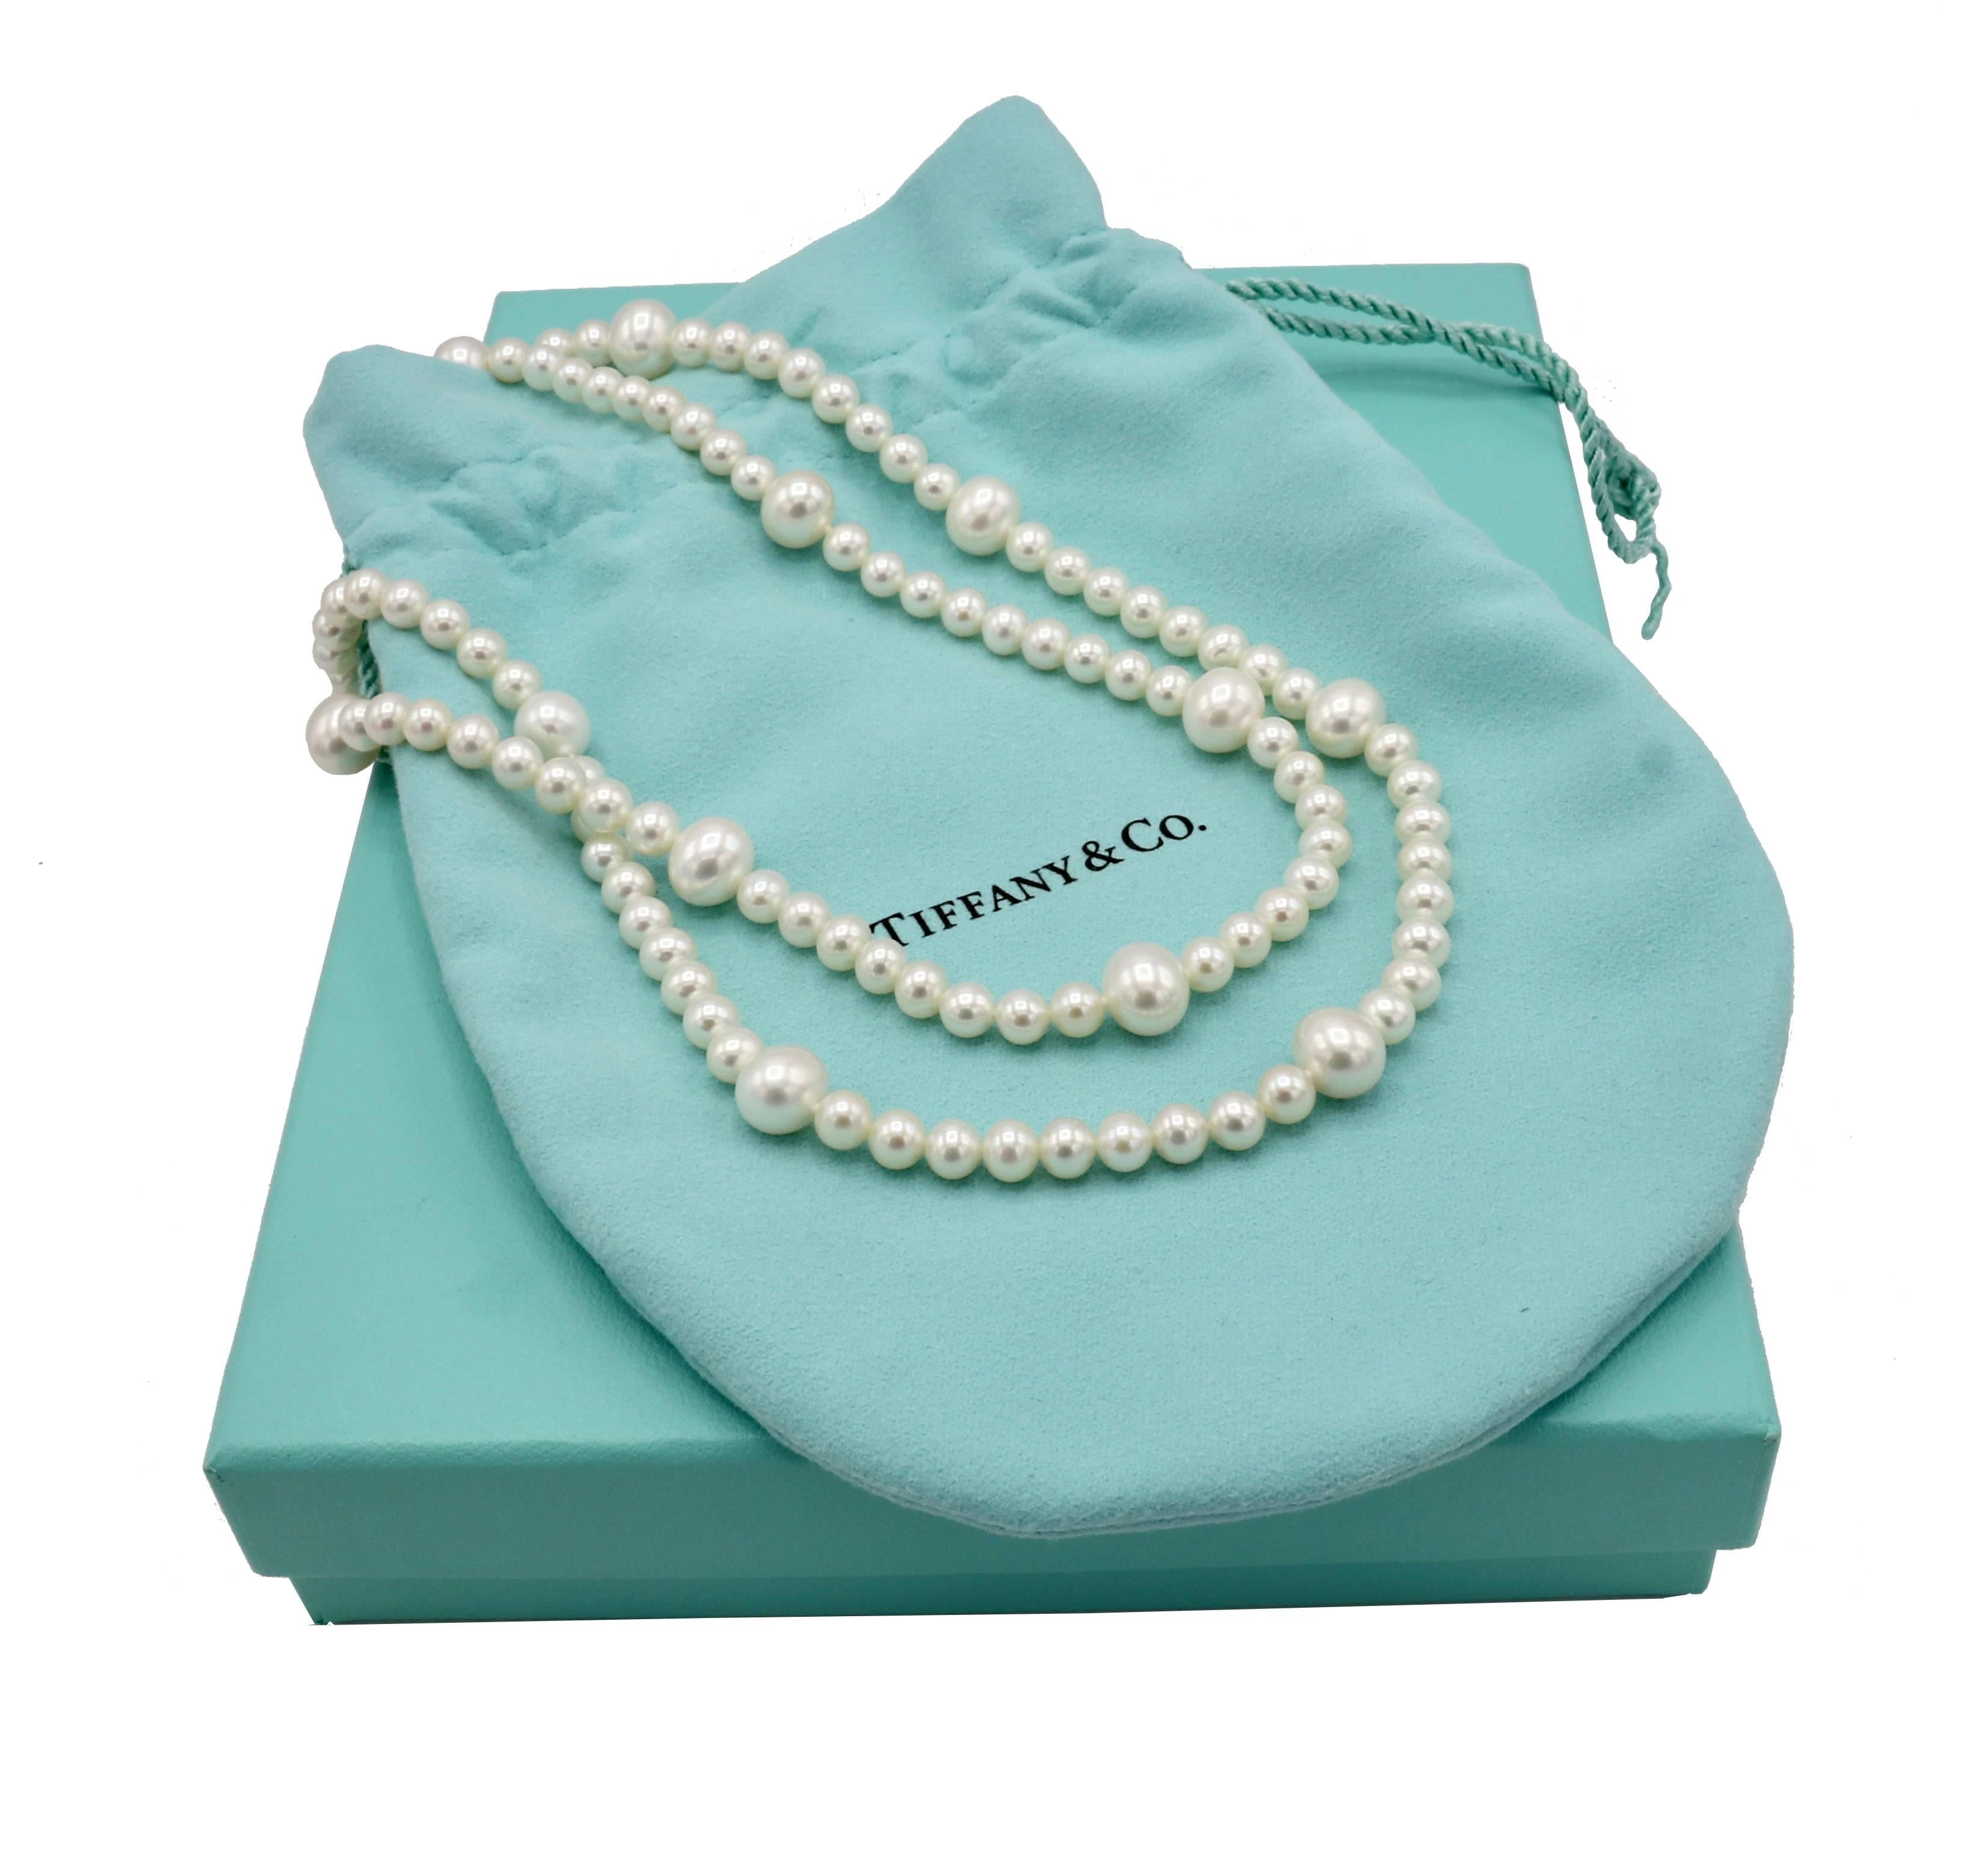 Tiffany & Co. Collier de perles en argent 
Métal : Argent sterling 925
Poids : 45 grammes
Longueur : 31 pouces
Perles : 5,5 - 9,5 mm
Signé : ©T&Co. AG925 Tiffany & Co. 
Notes : Boîte et pochette 